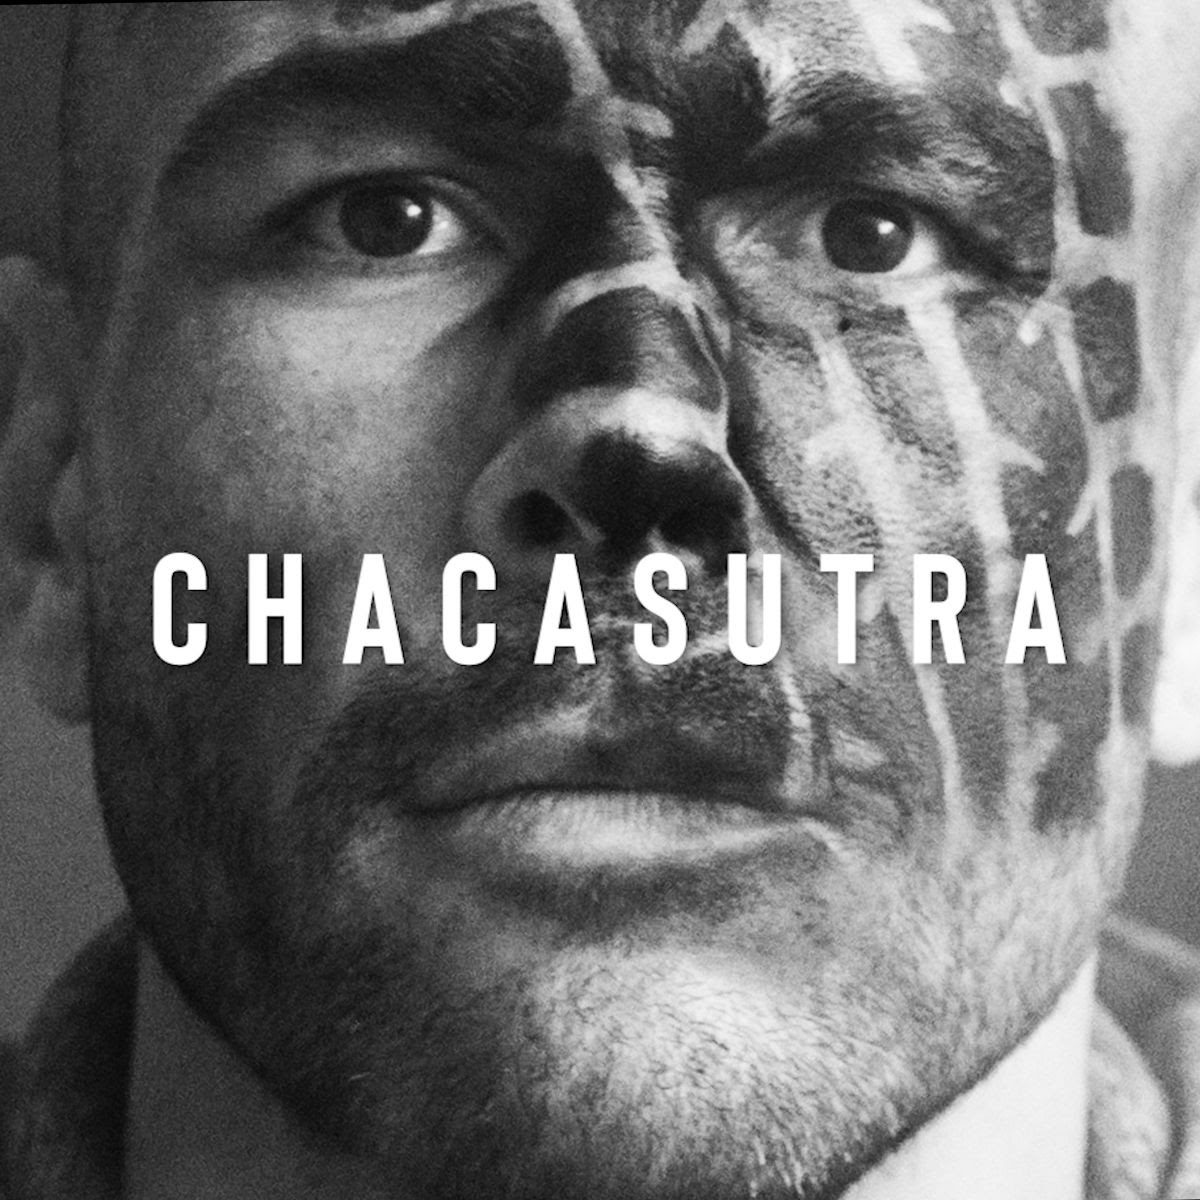 Isaac_real_chaca_chacasutra